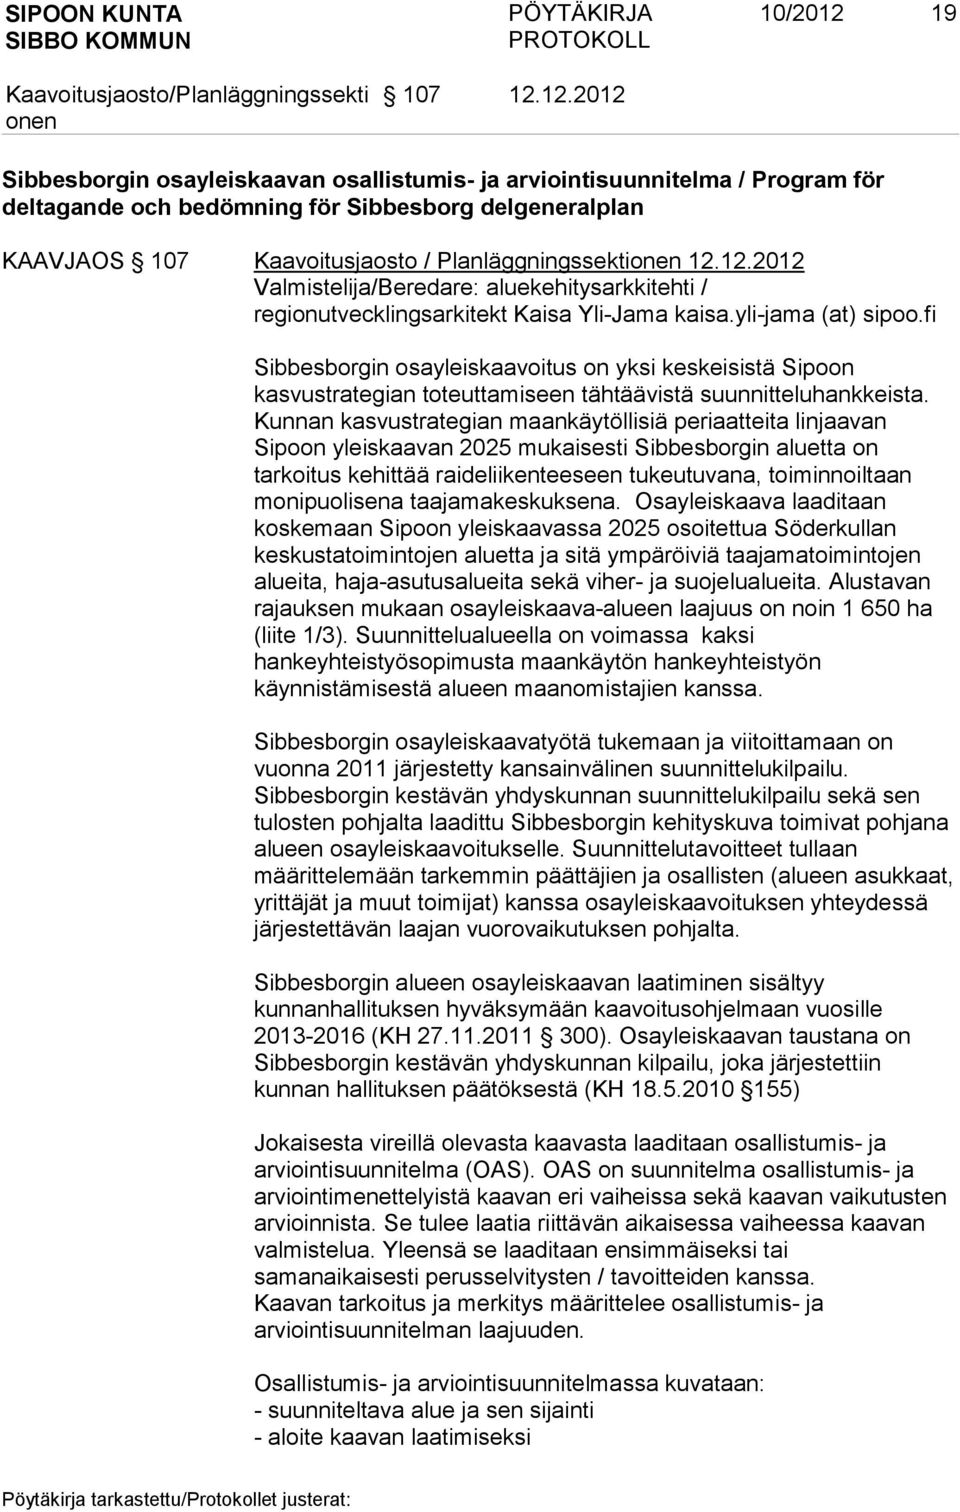 Planläggningssekti 12.12.2012 Valmistelija/Beredare: aluekehitysarkkitehti / regionutvecklingsarkitekt Kaisa Yli-Jama kaisa.yli-jama (at) sipoo.